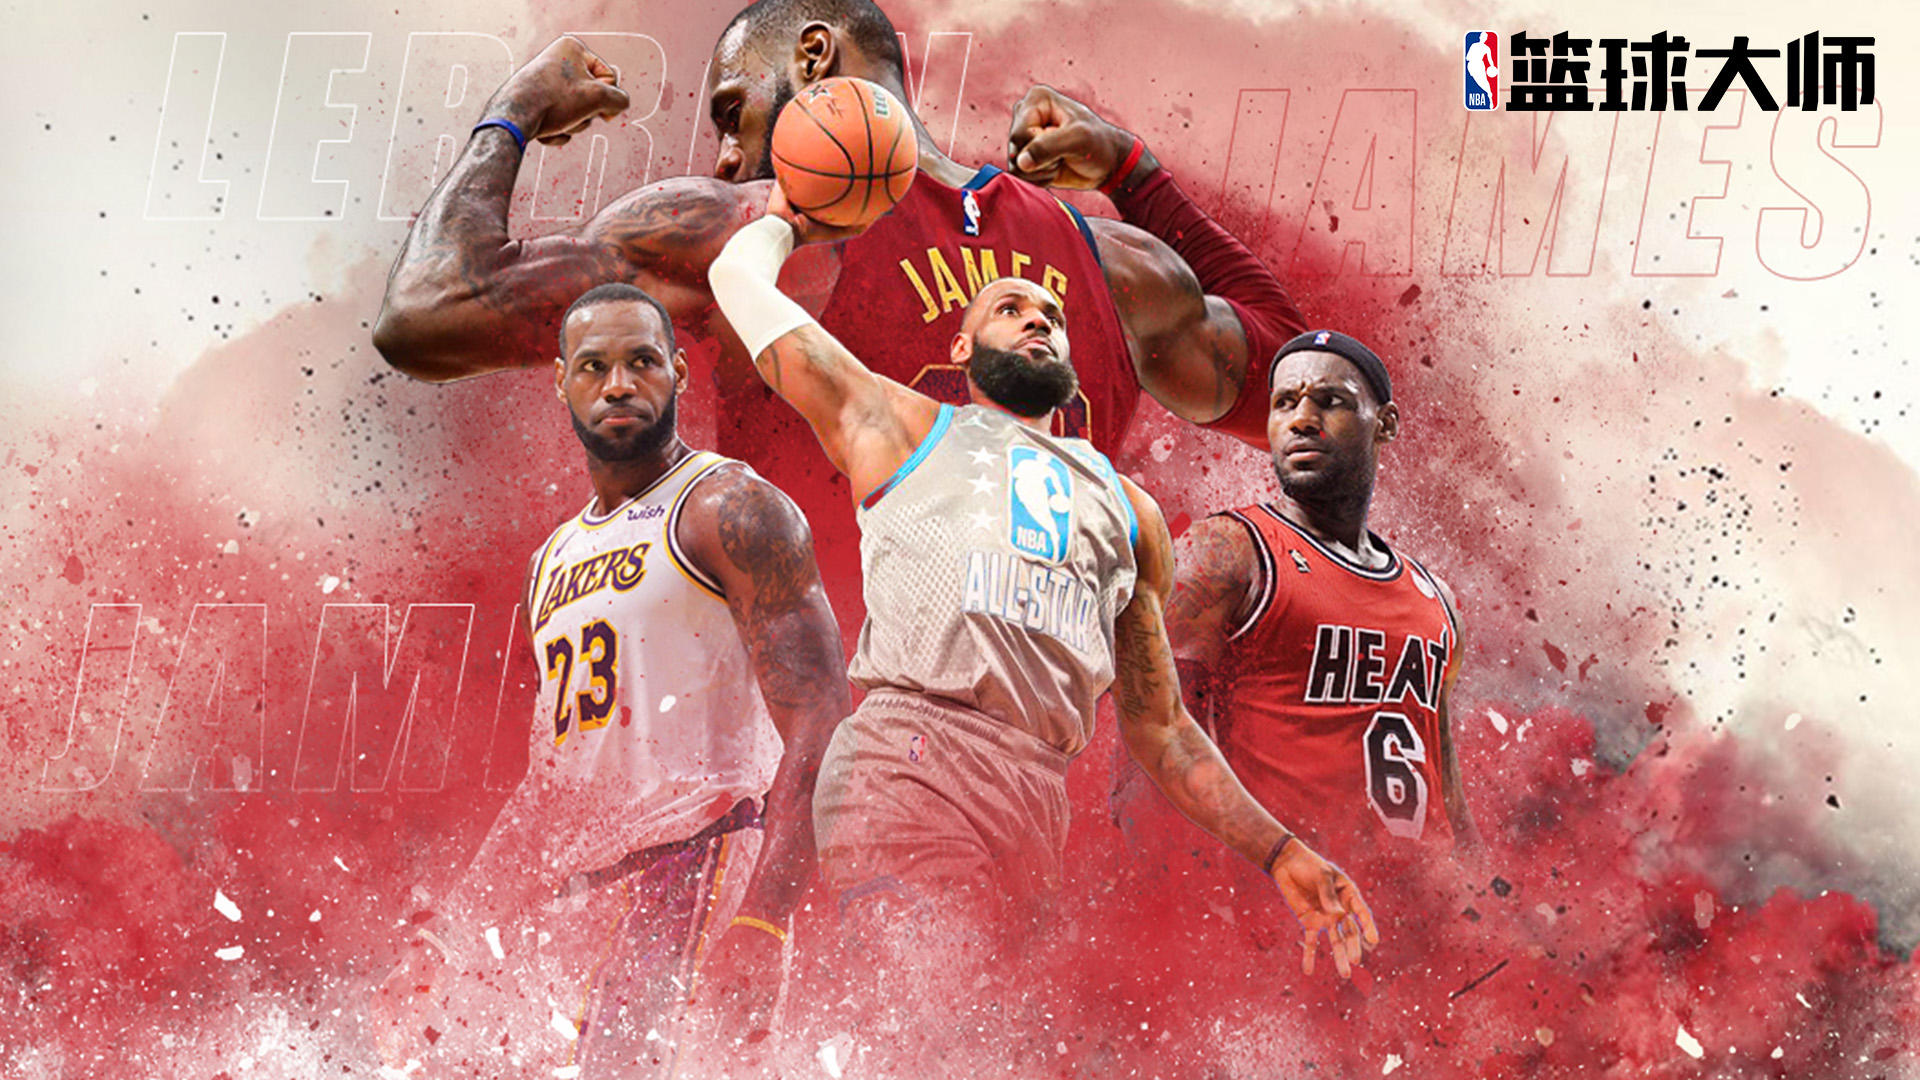 Banner of Mestres de basquete da NBA 